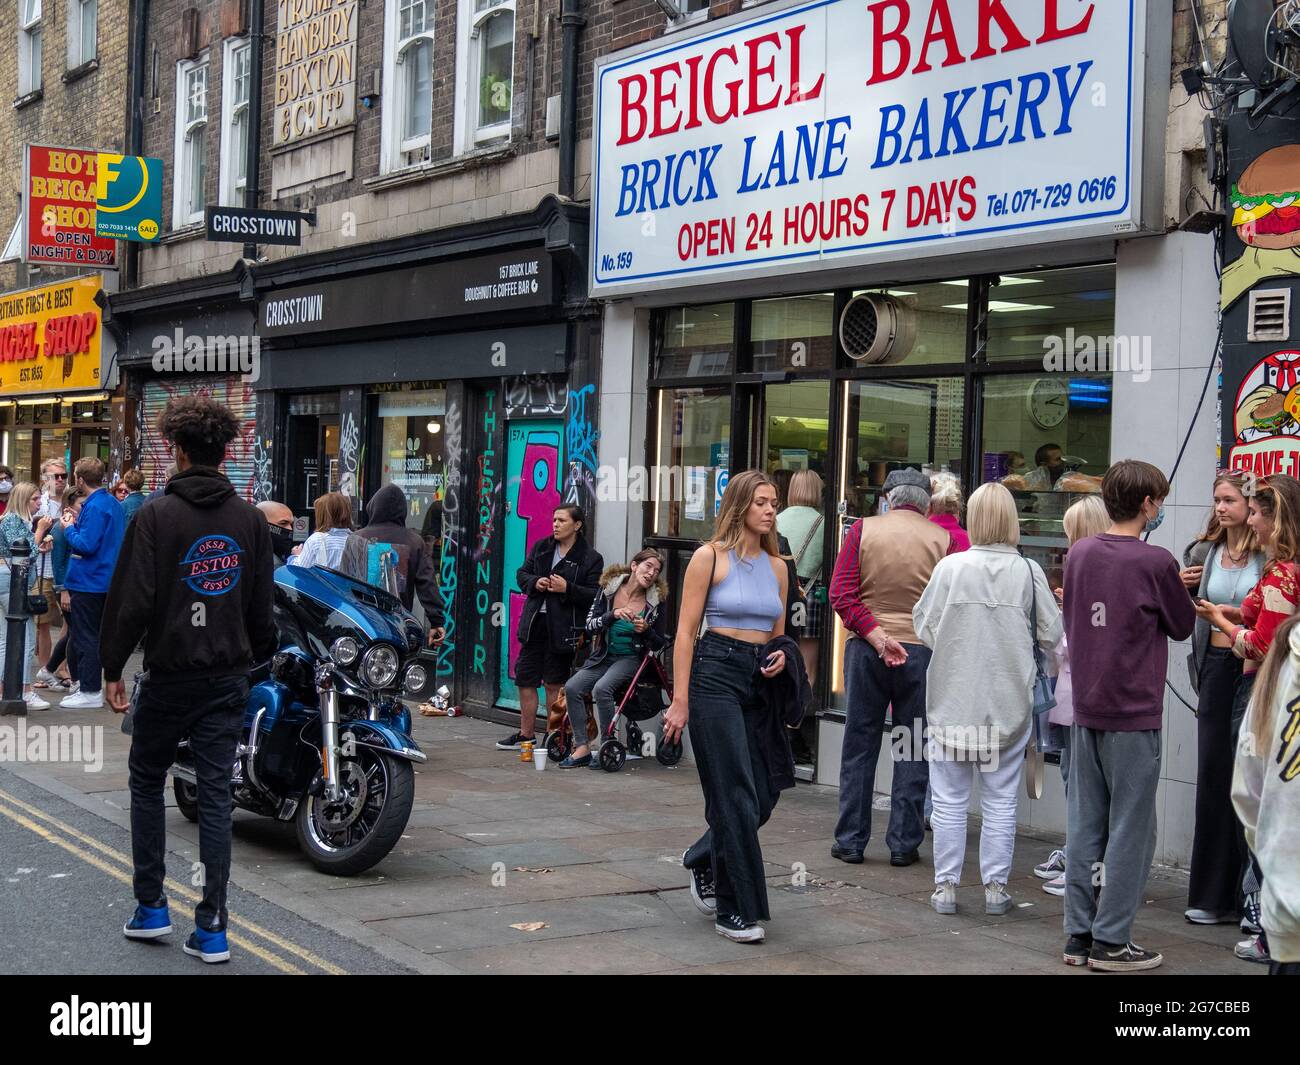 London - Juli 2021: Beigel Bake, ein berühmter Bagel-Laden in der Brick Lane, einer modischen Gegend im Osten Londons Stockfoto